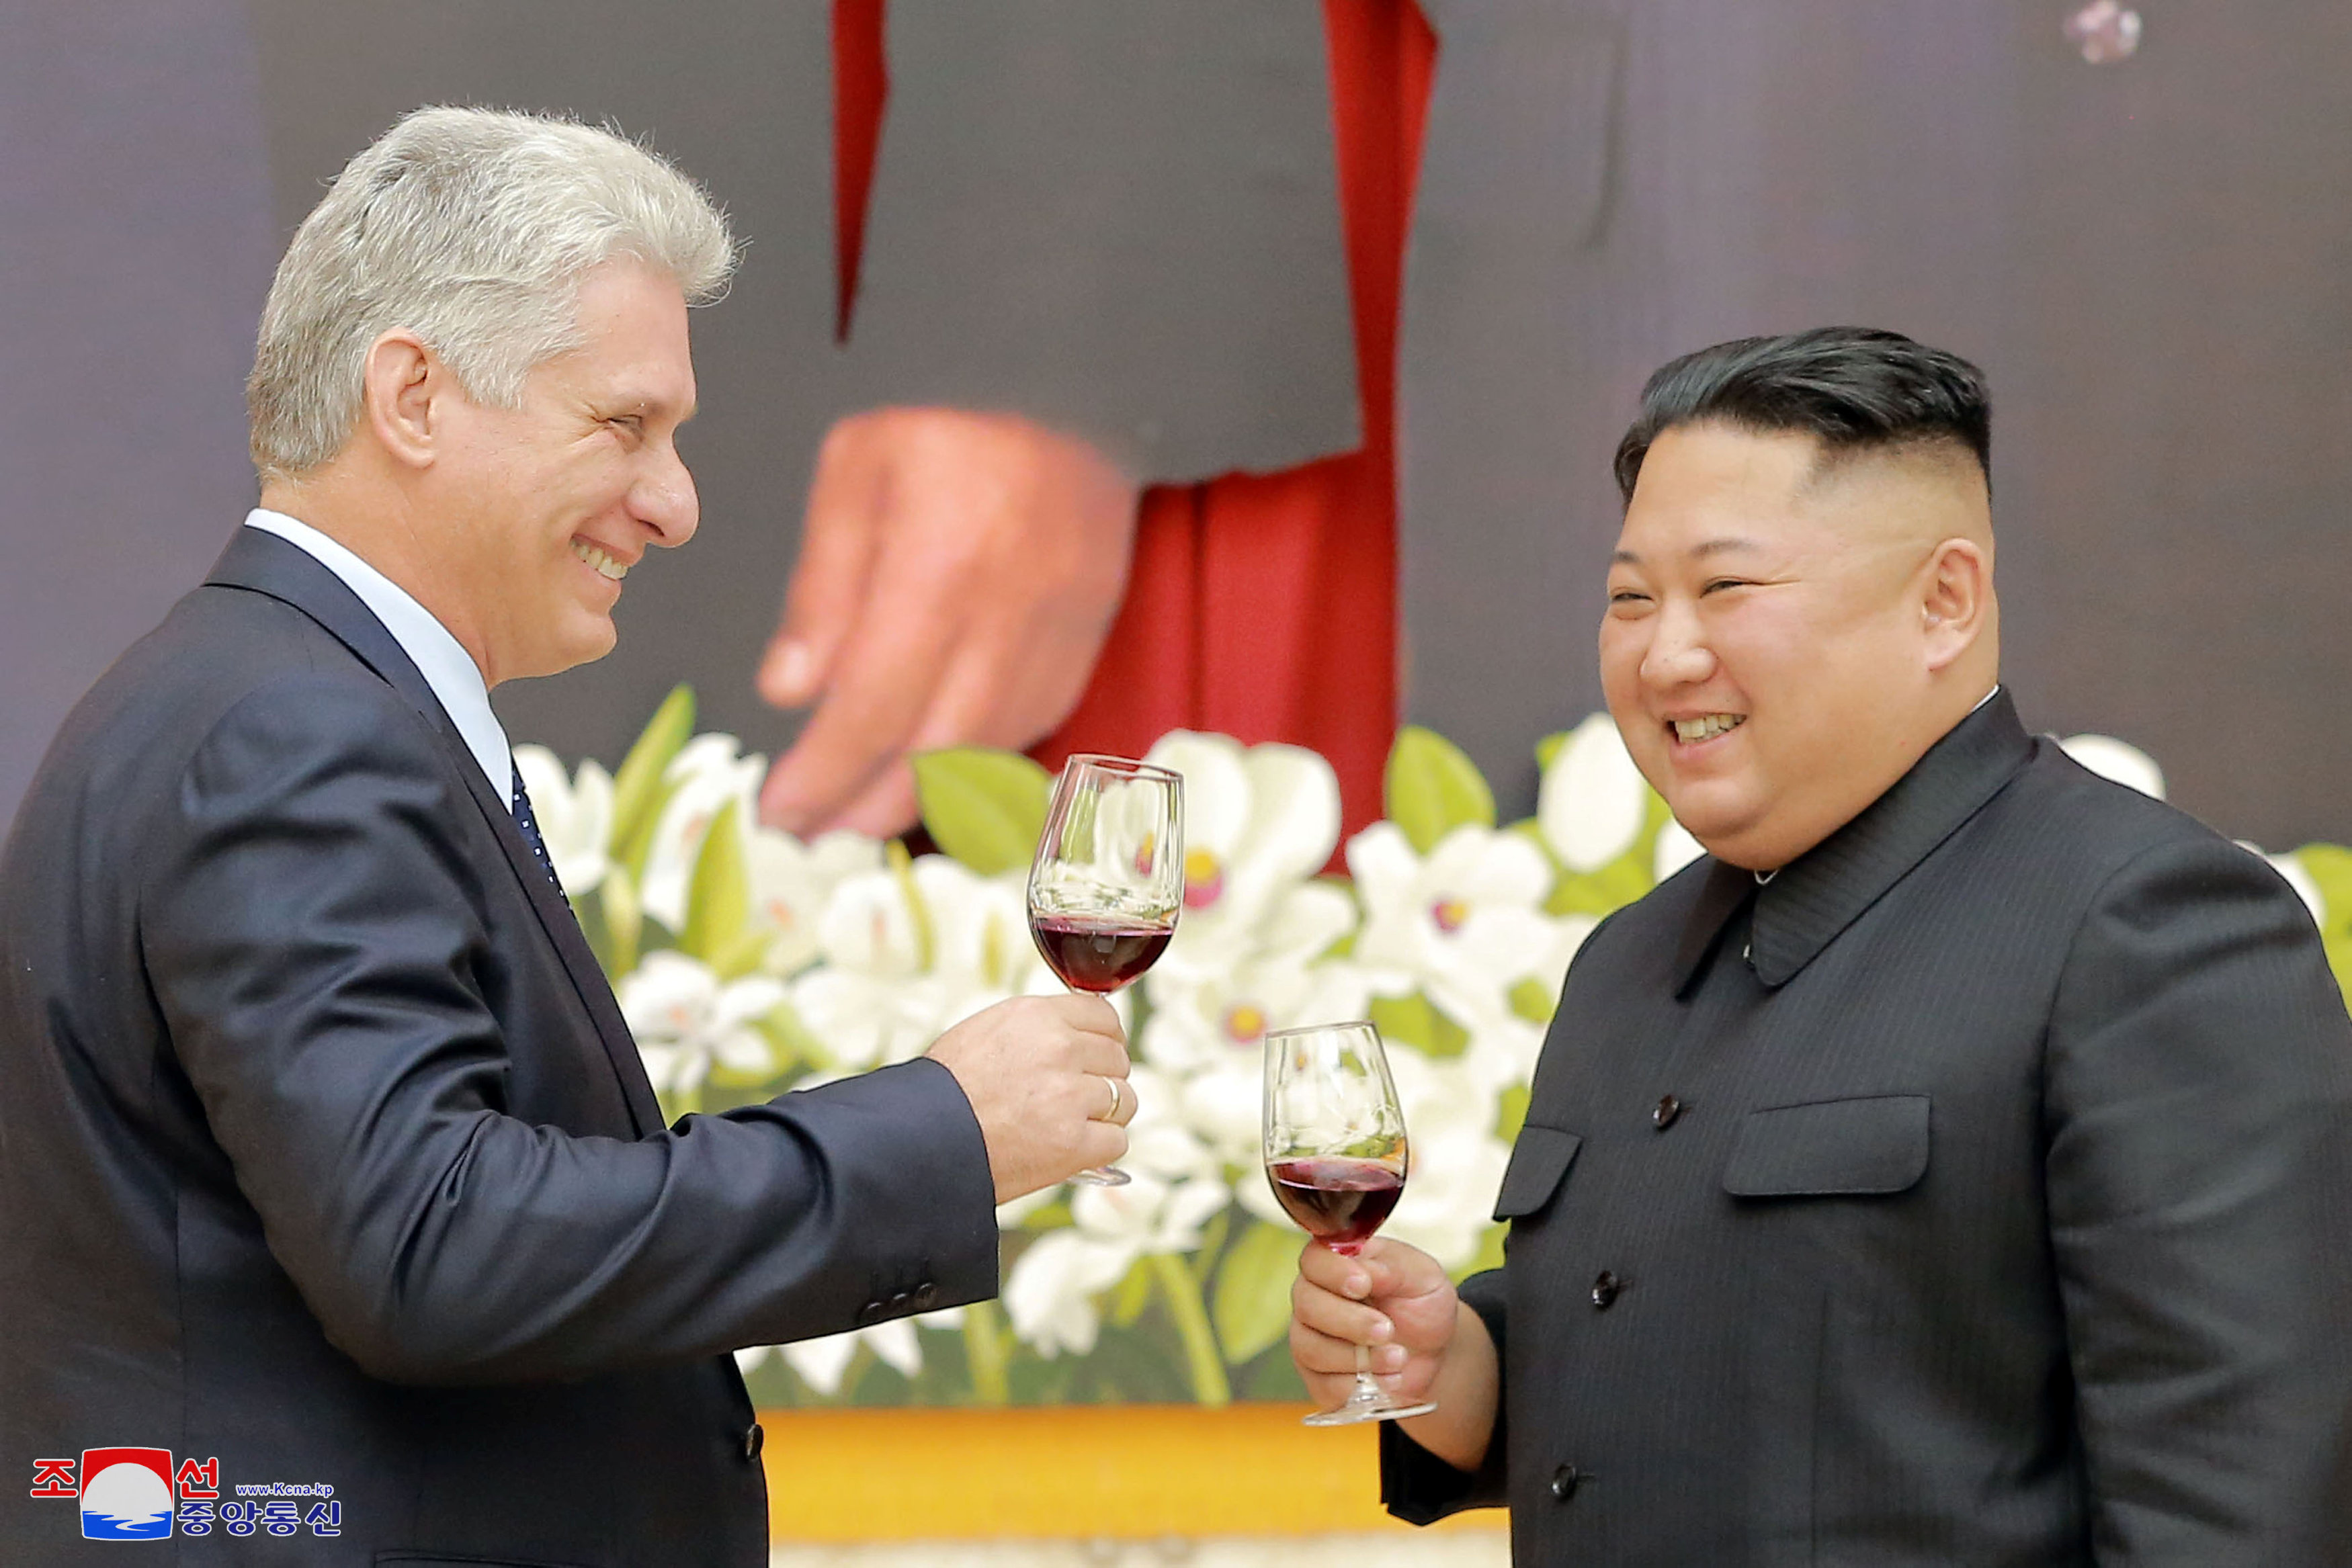 زعيما كوريا الشمالية وكوبا